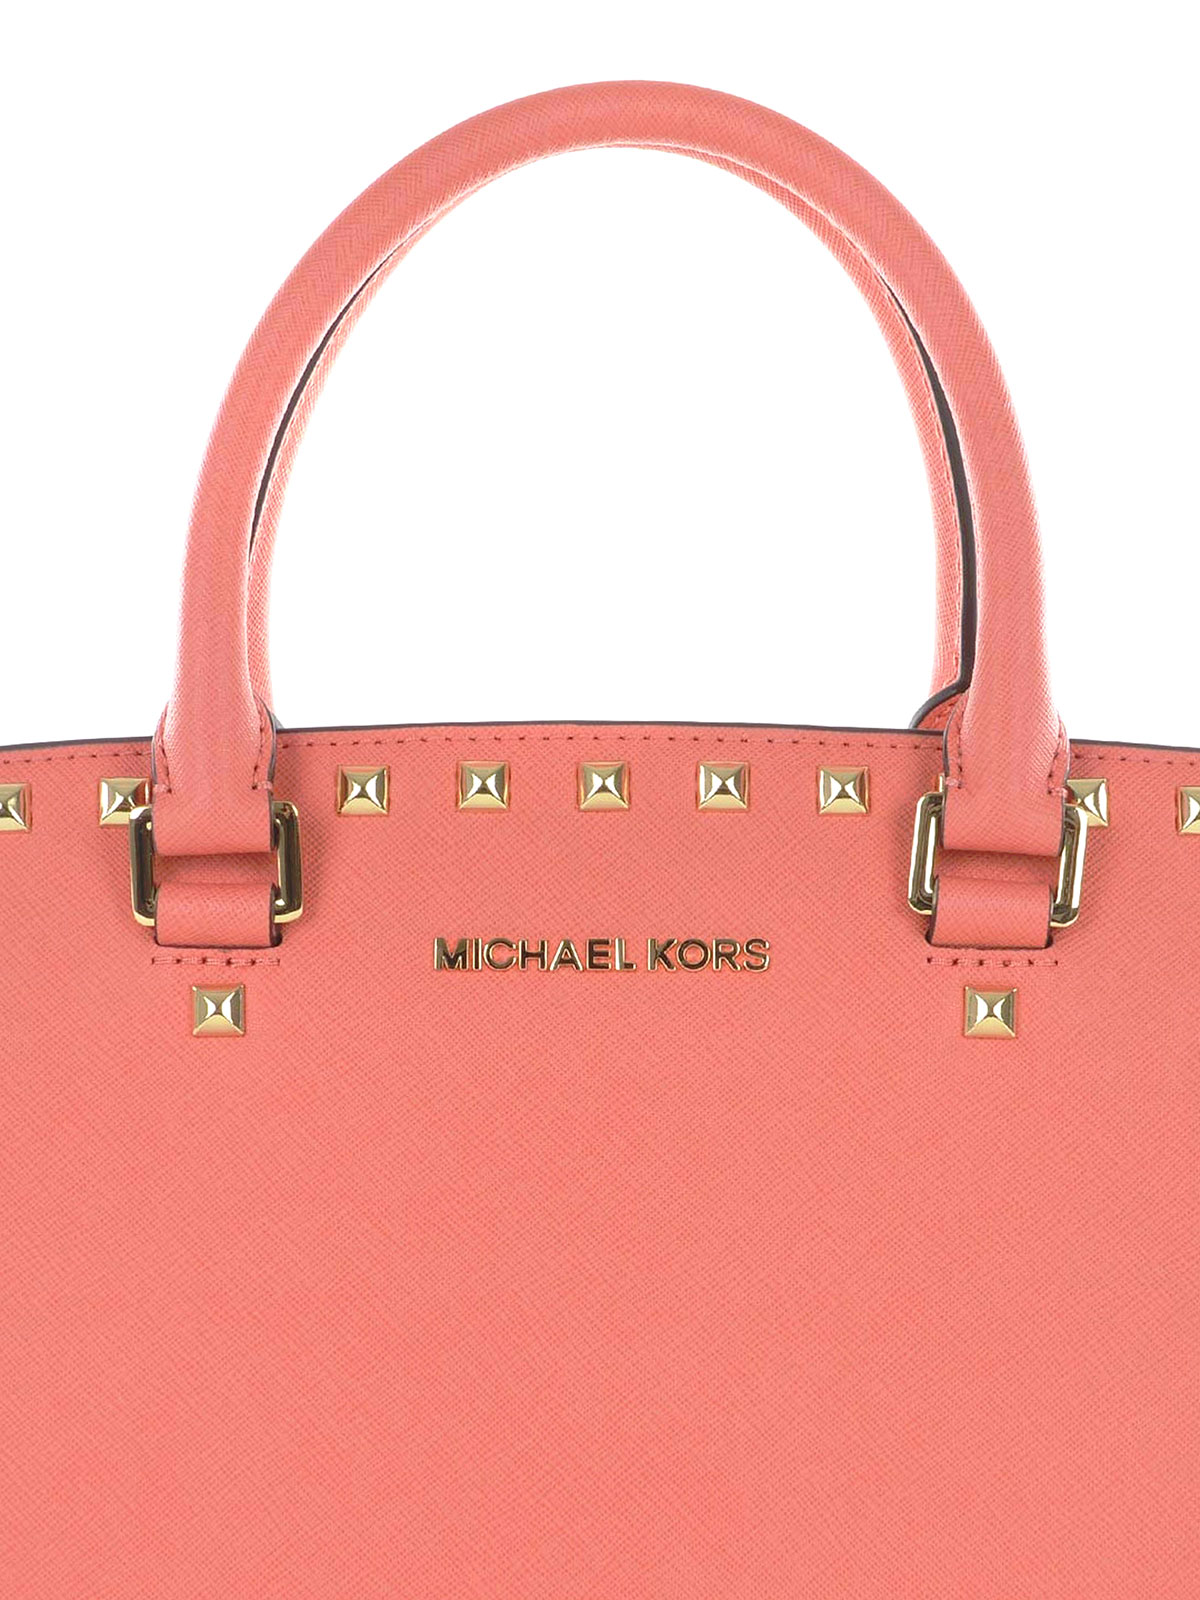 Michael Kors - Selma Medium Studded Leather Top Handle Pink